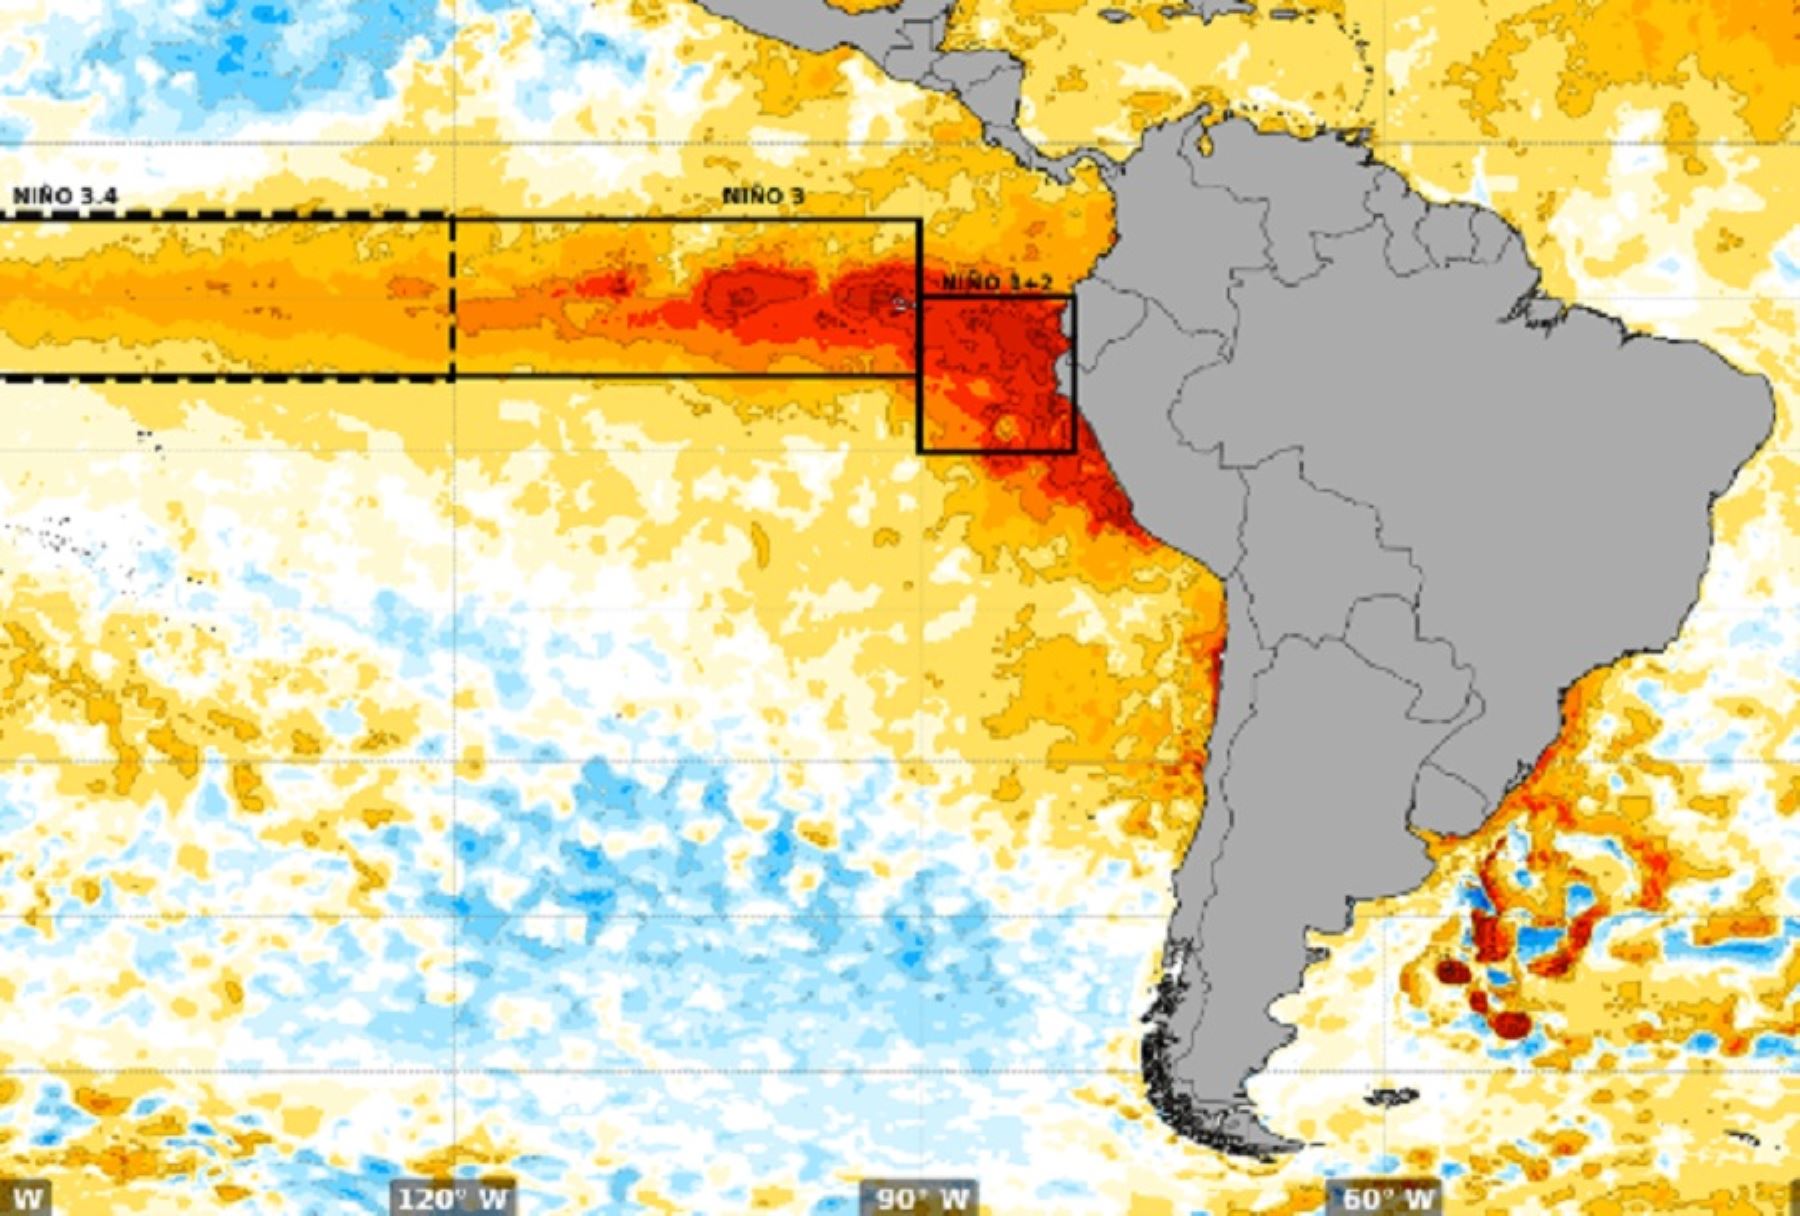 El concepto de Fenómeno El Niño se estableció a fines del siglo XIX e inicios del XX en referencia al calentamiento anormal de la costa norte peruana, asociado a la llamada “corriente del Niño”, y a fuertes lluvias asociadas.